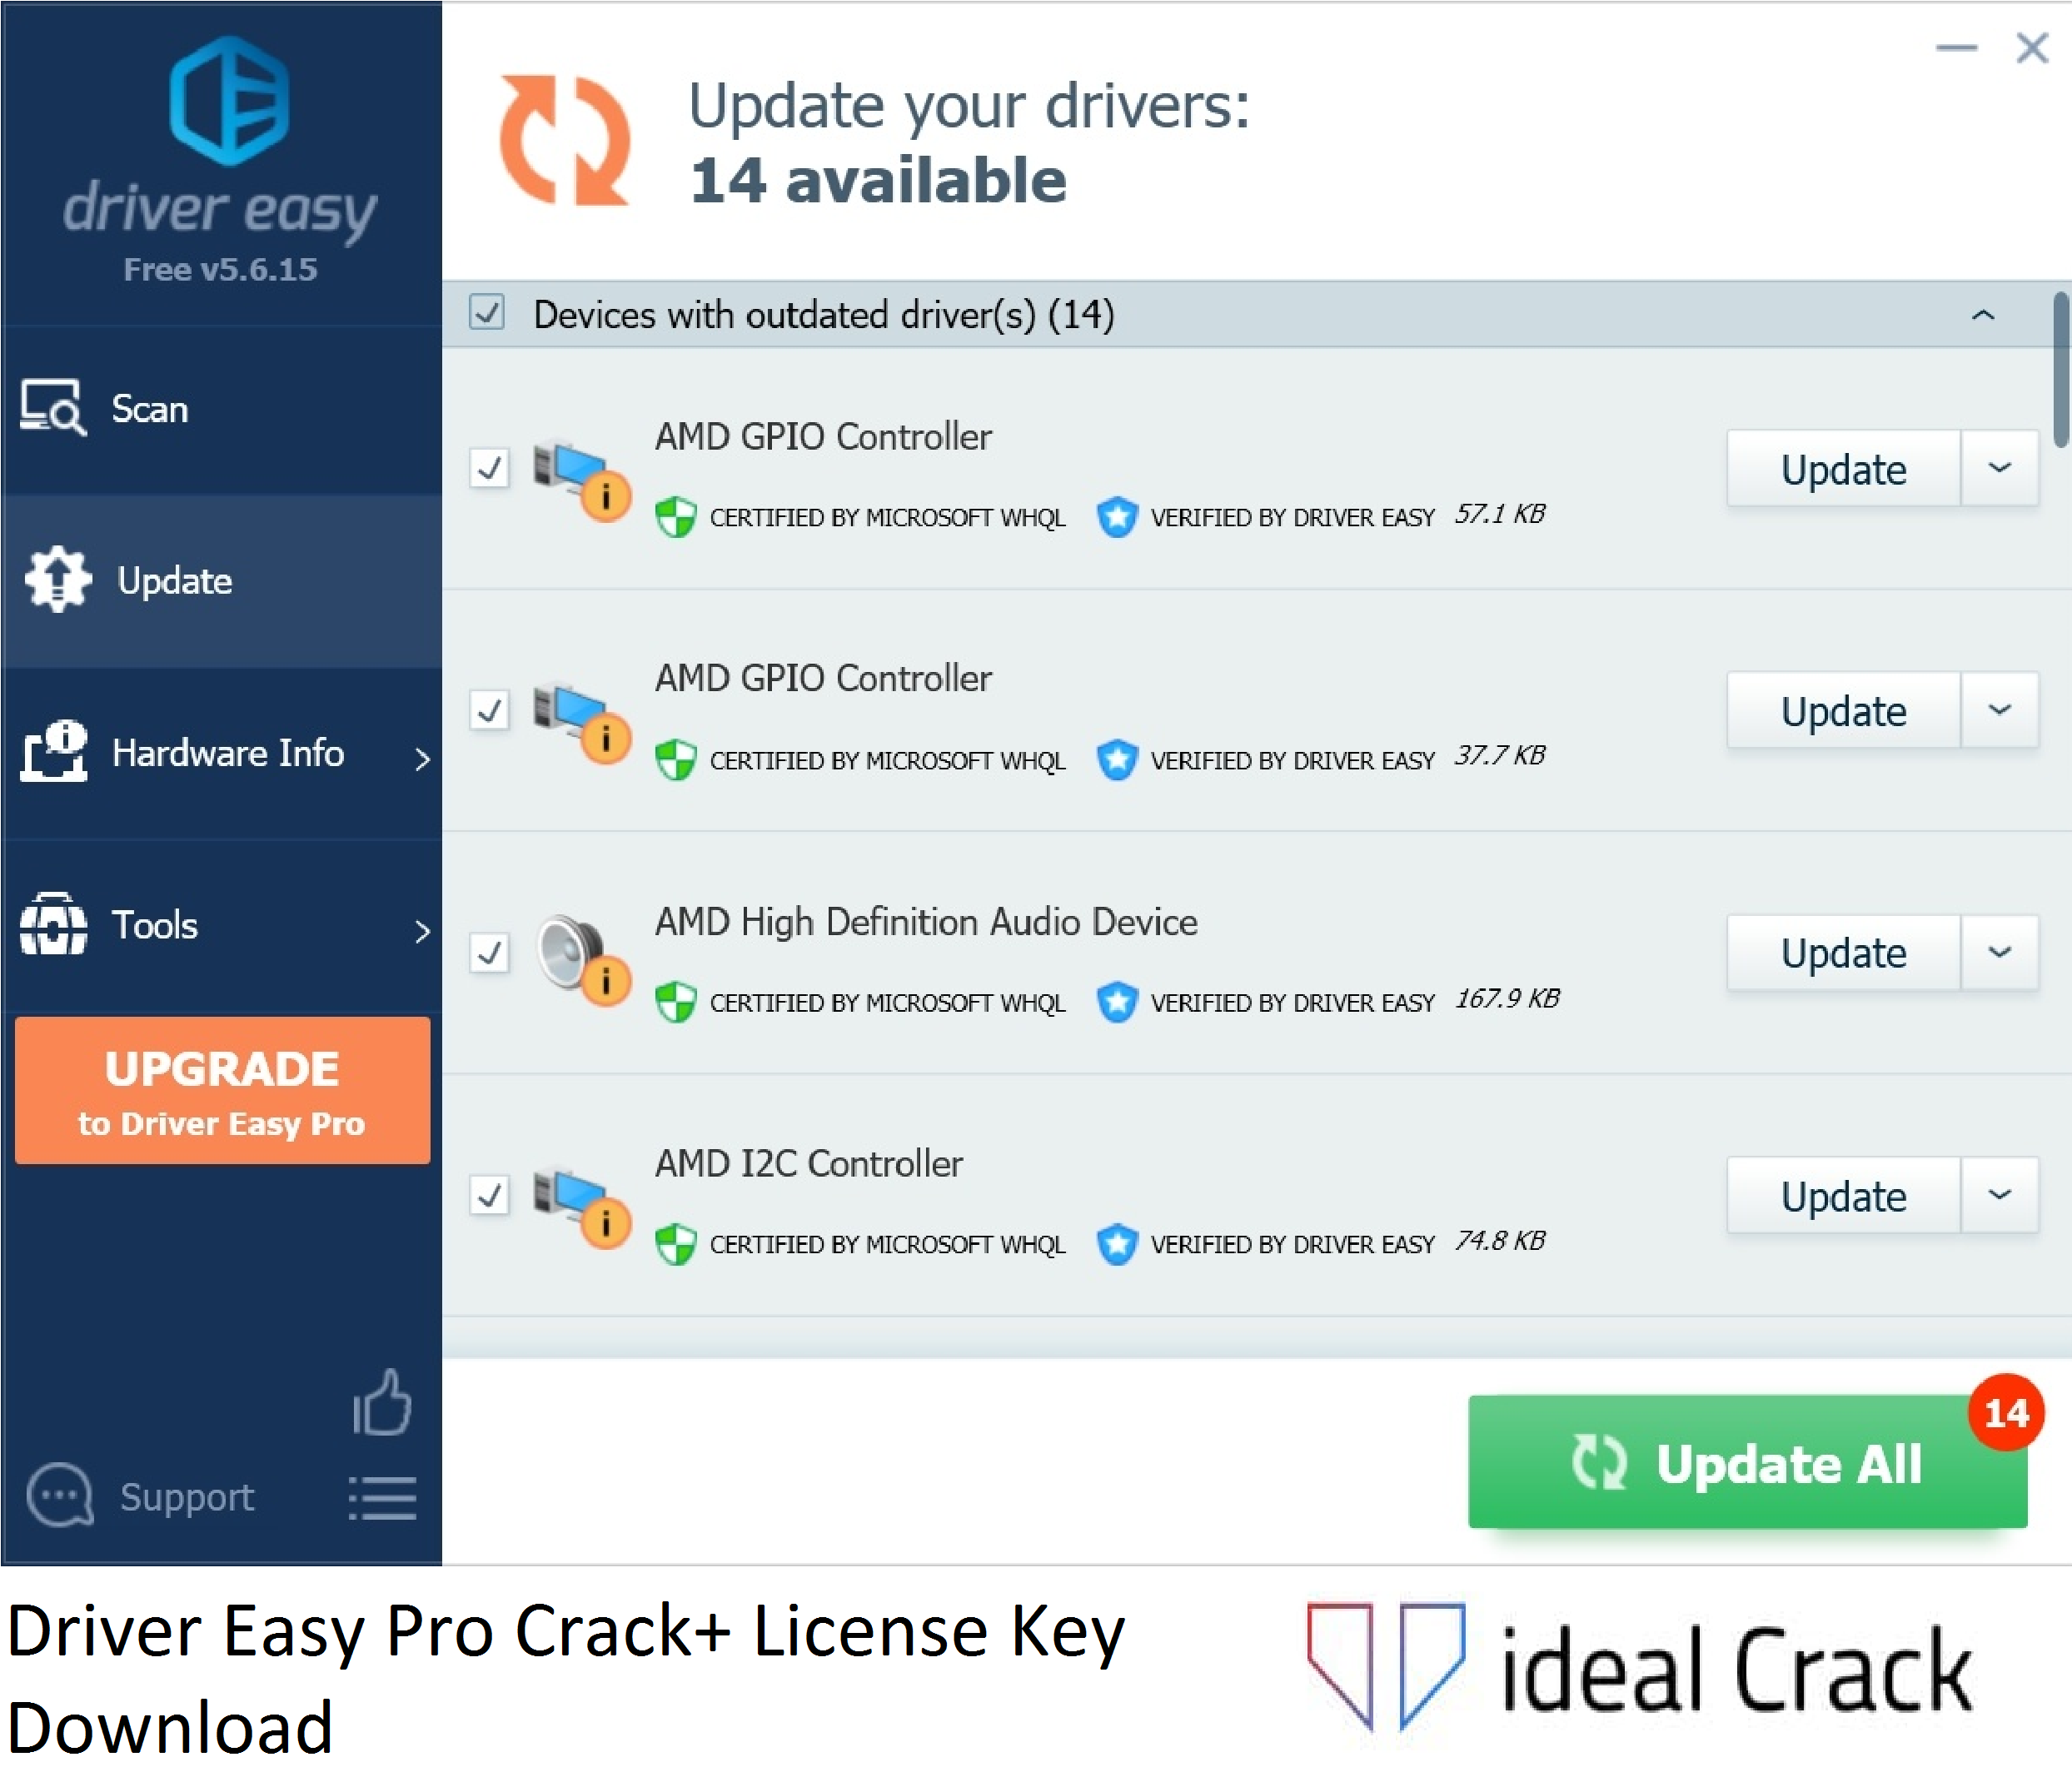 Driver Easy Pro Crack+ License Key Download